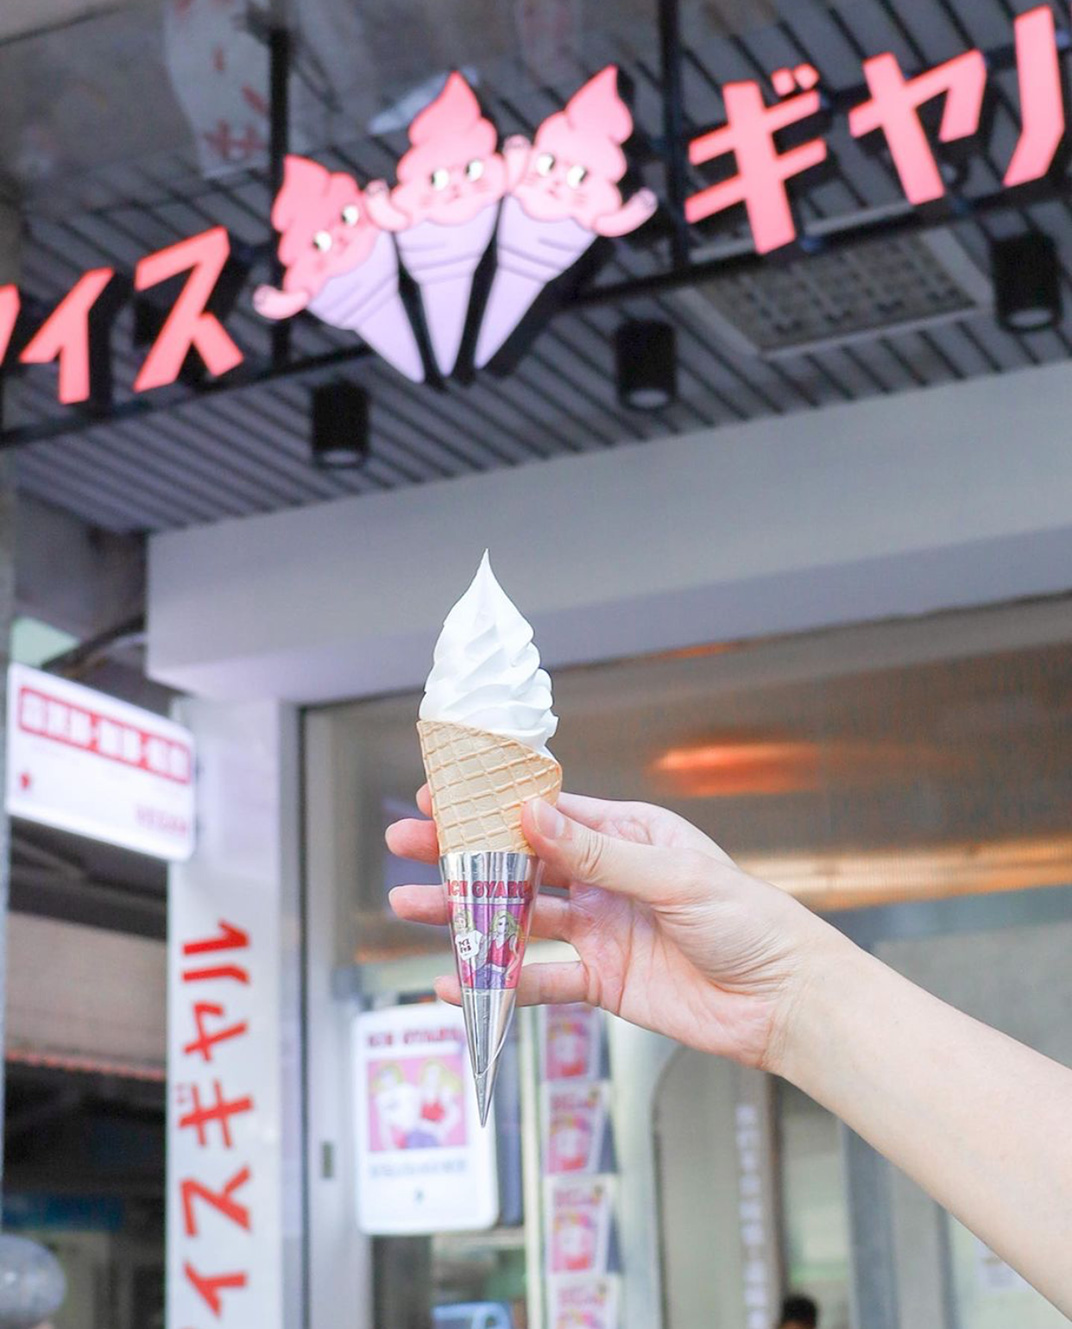 日漫风格霜淇淋专门店设计 台湾 上海 日式 漫画 插画设计 粉色 冰淇淋 海报设计 logo设计 vi设计 空间设计